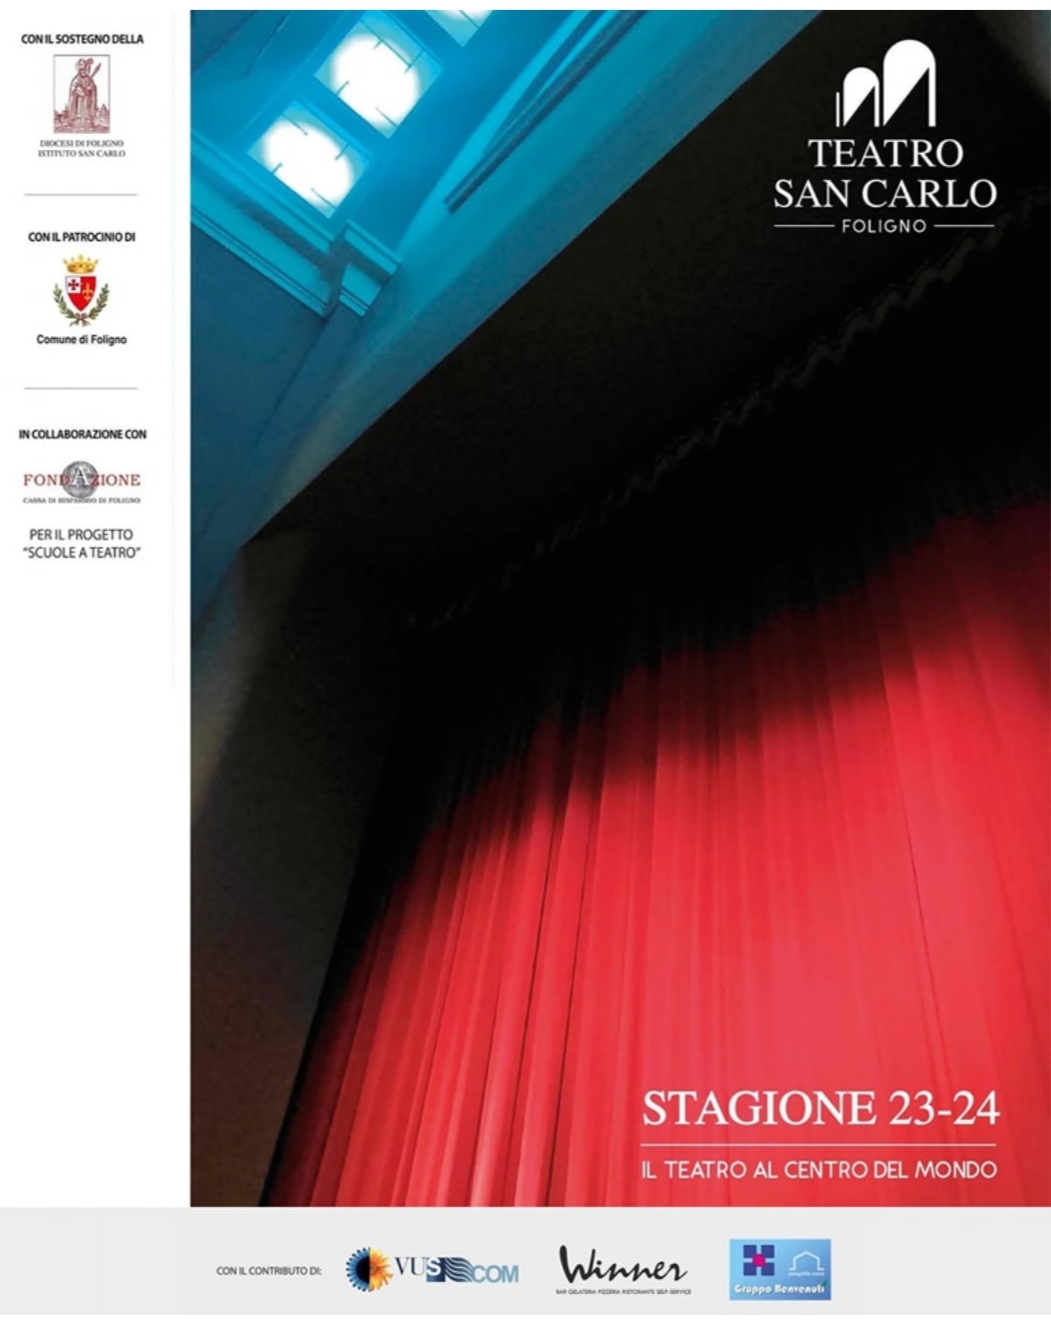 Teatro San Carlo_Foligno